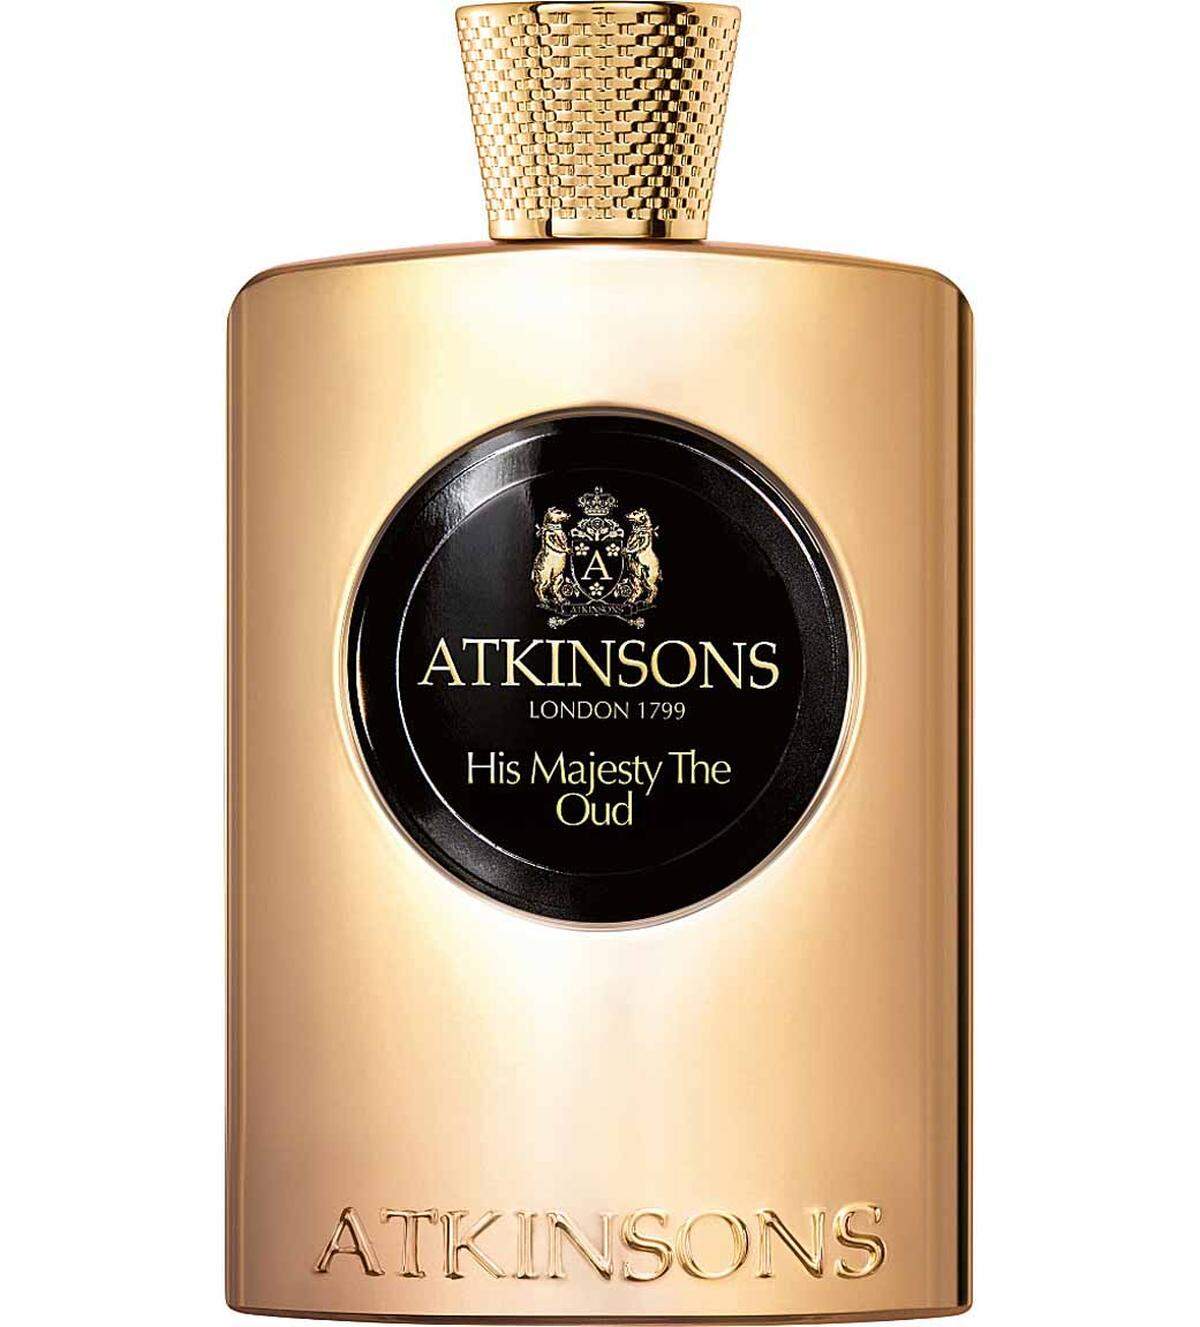 Orientalische Oudh-Akkorde dominieren in "His Majesty the Oud" von Atkinsons 100 ml Eau de Parfum um 192 Euro. 